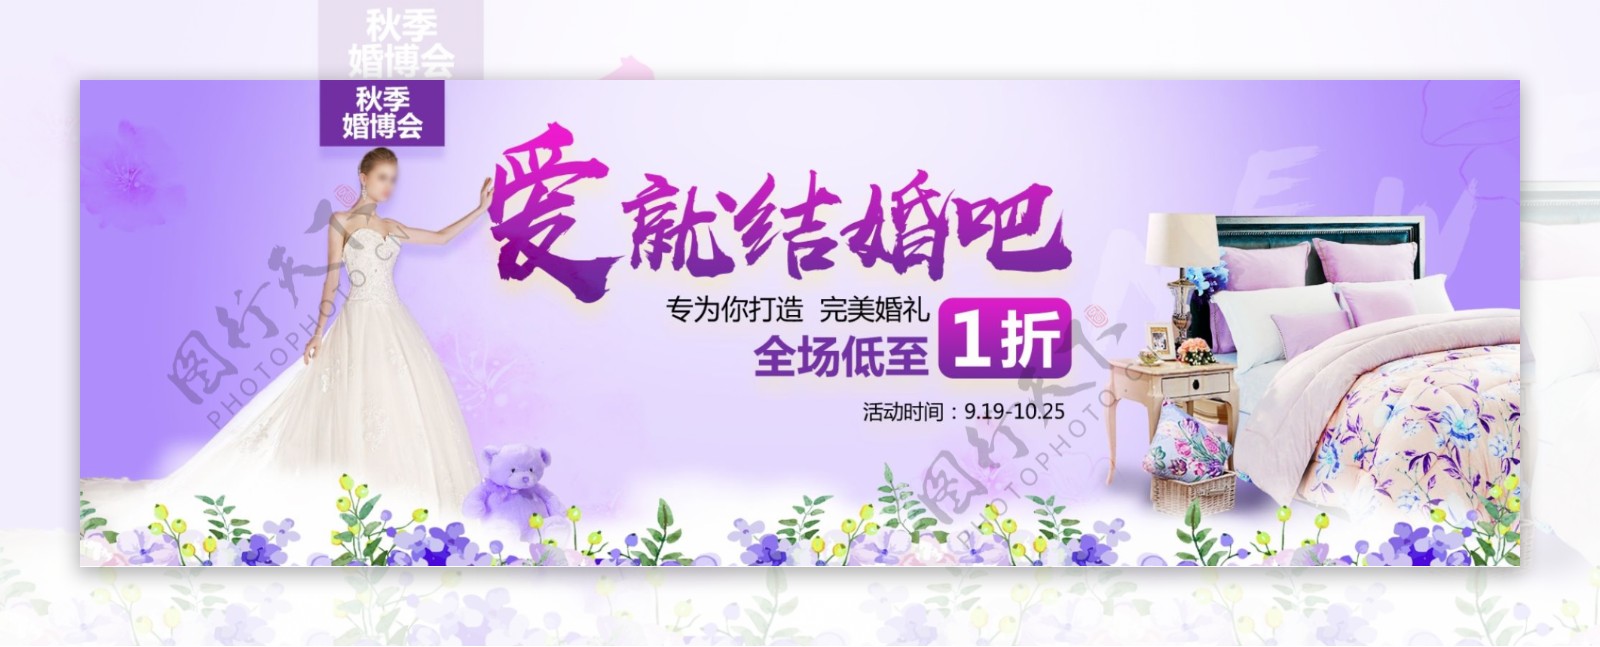 紫色婚纱摄影浪漫节日海报天猫banner电商婚博会